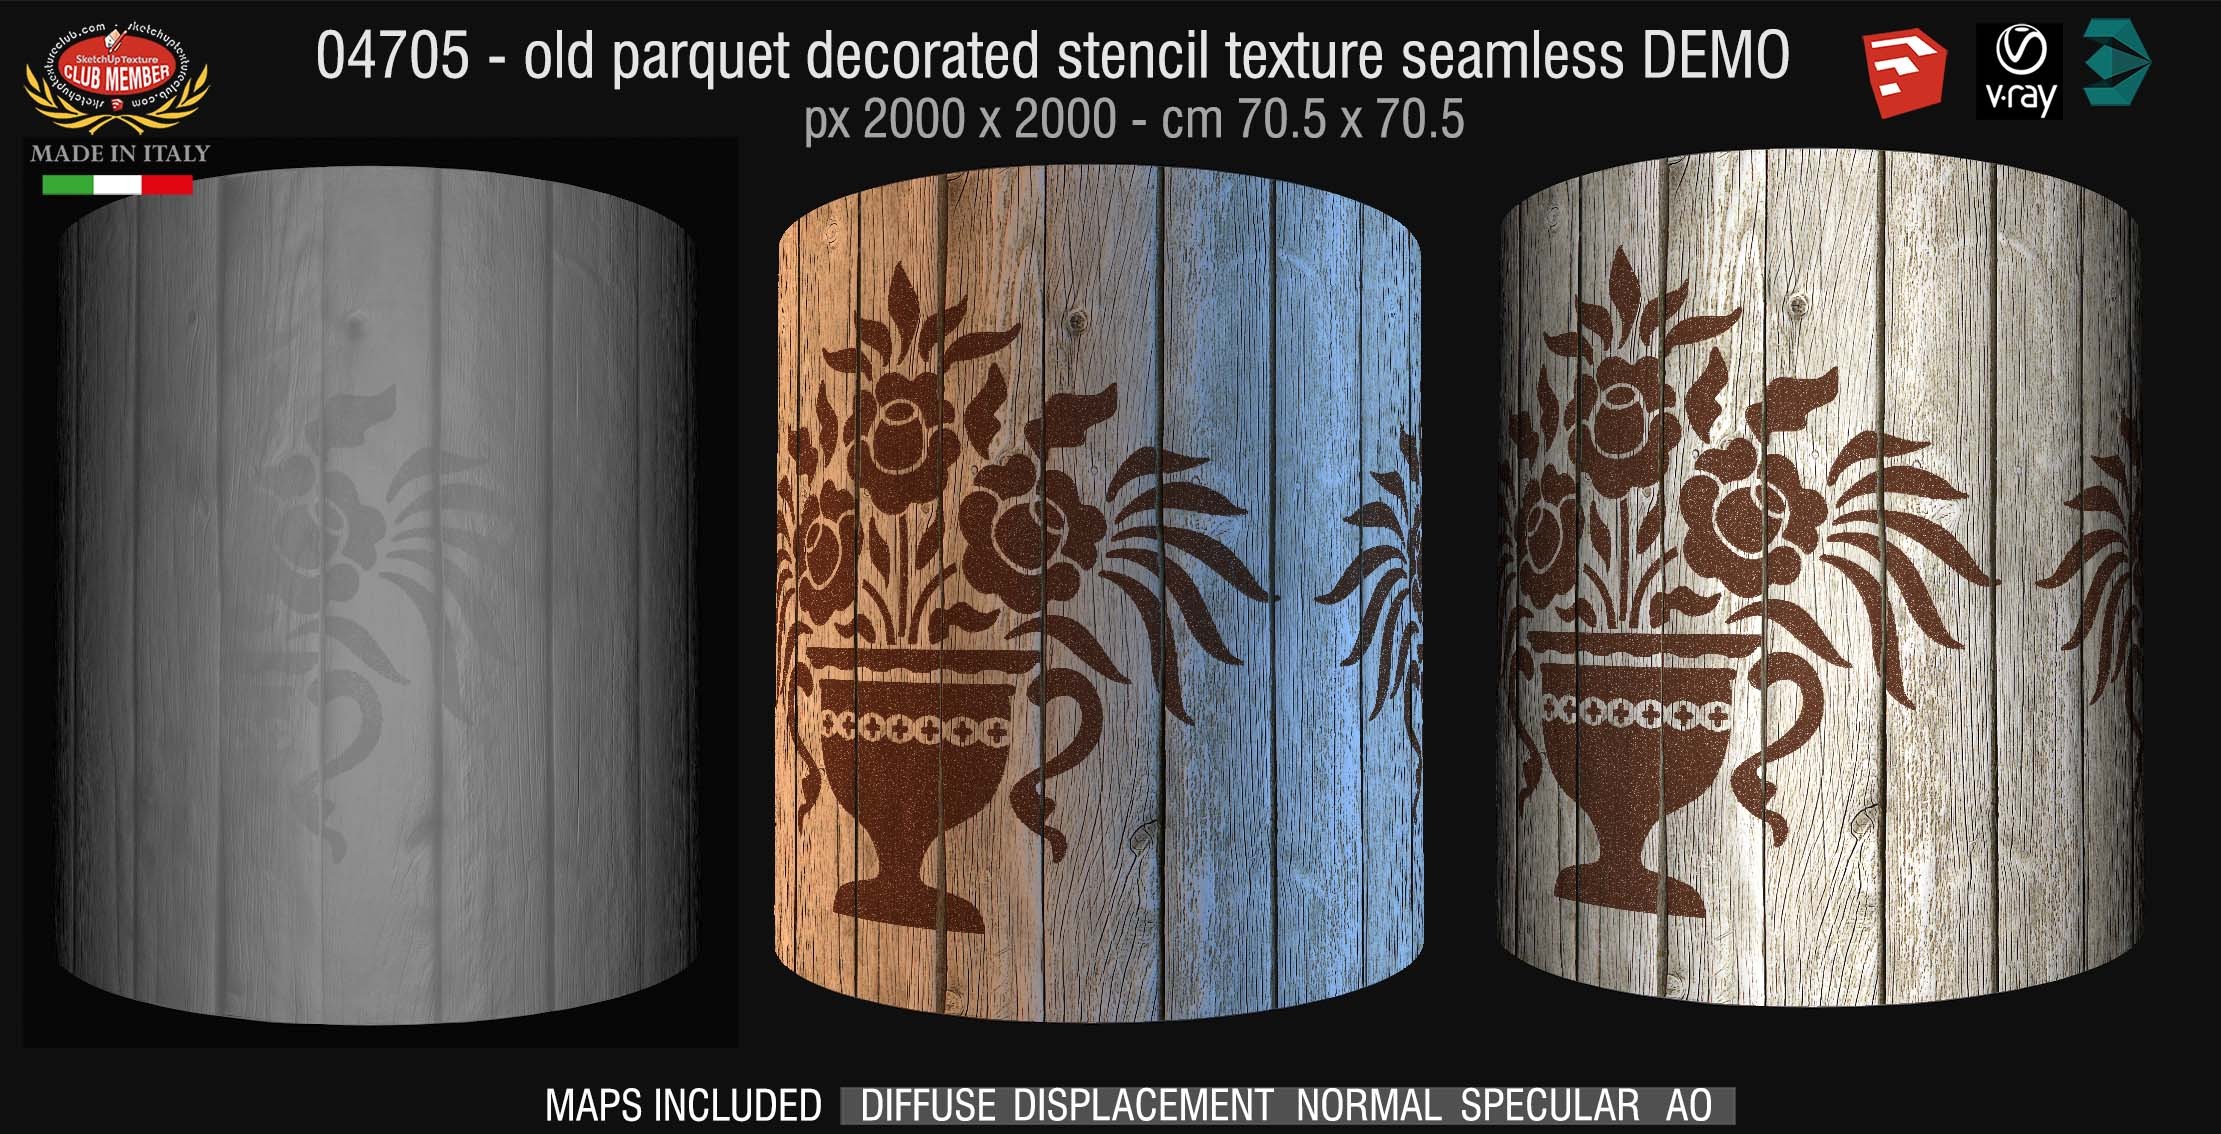 04705 HR Parquet decorated stencil texture seamless + maps DEMO